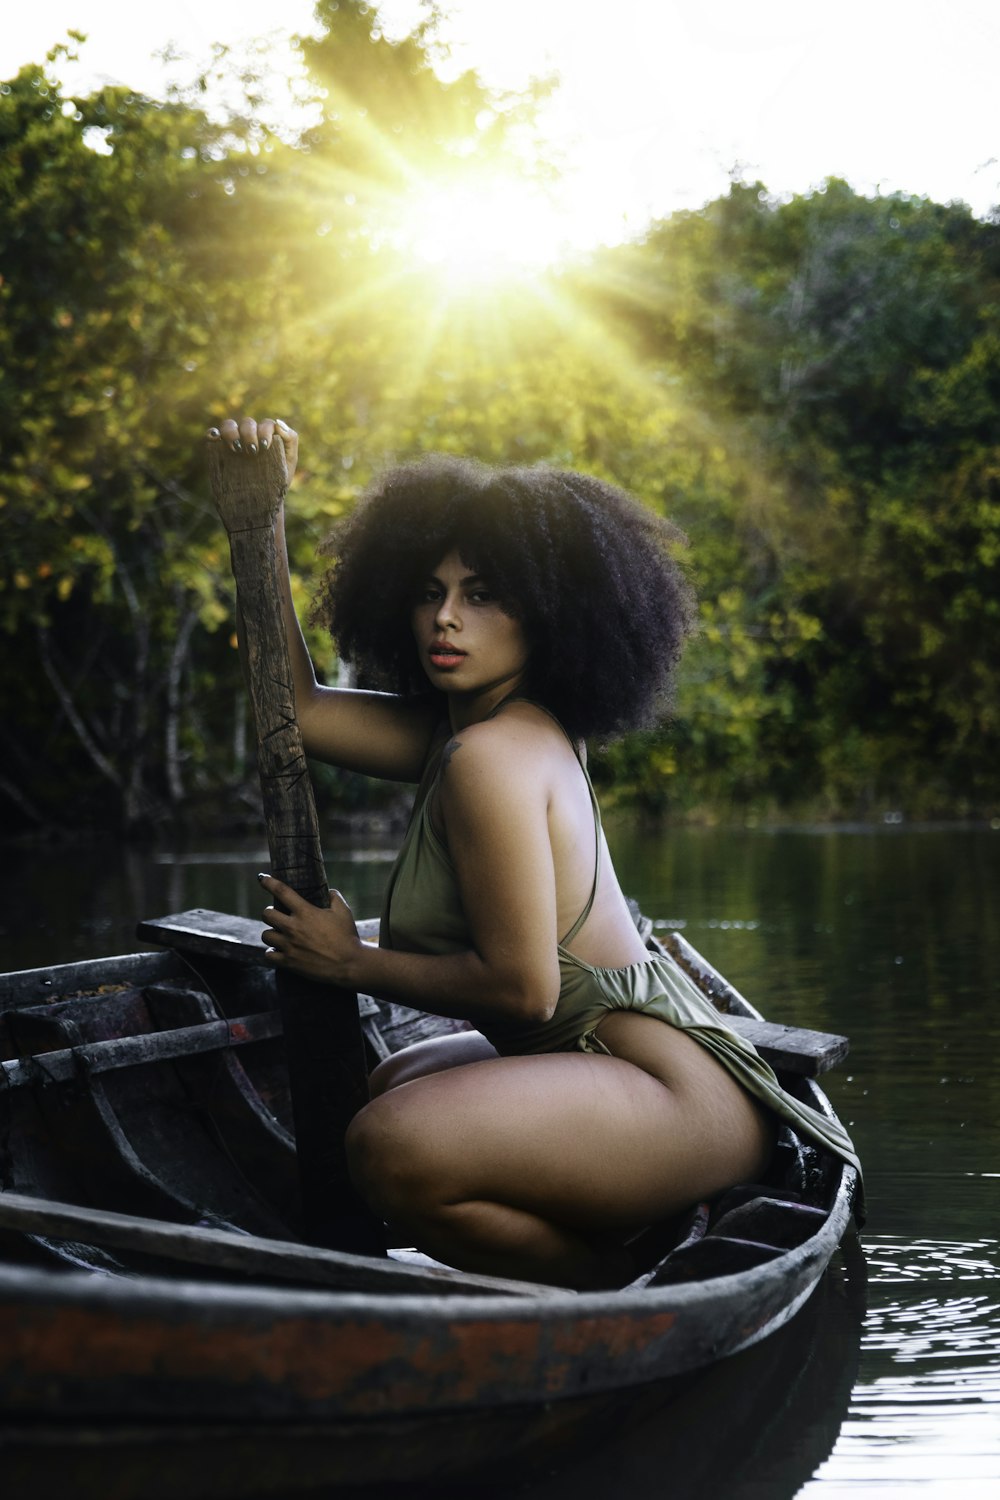 a woman in a bikini is sitting in a boat